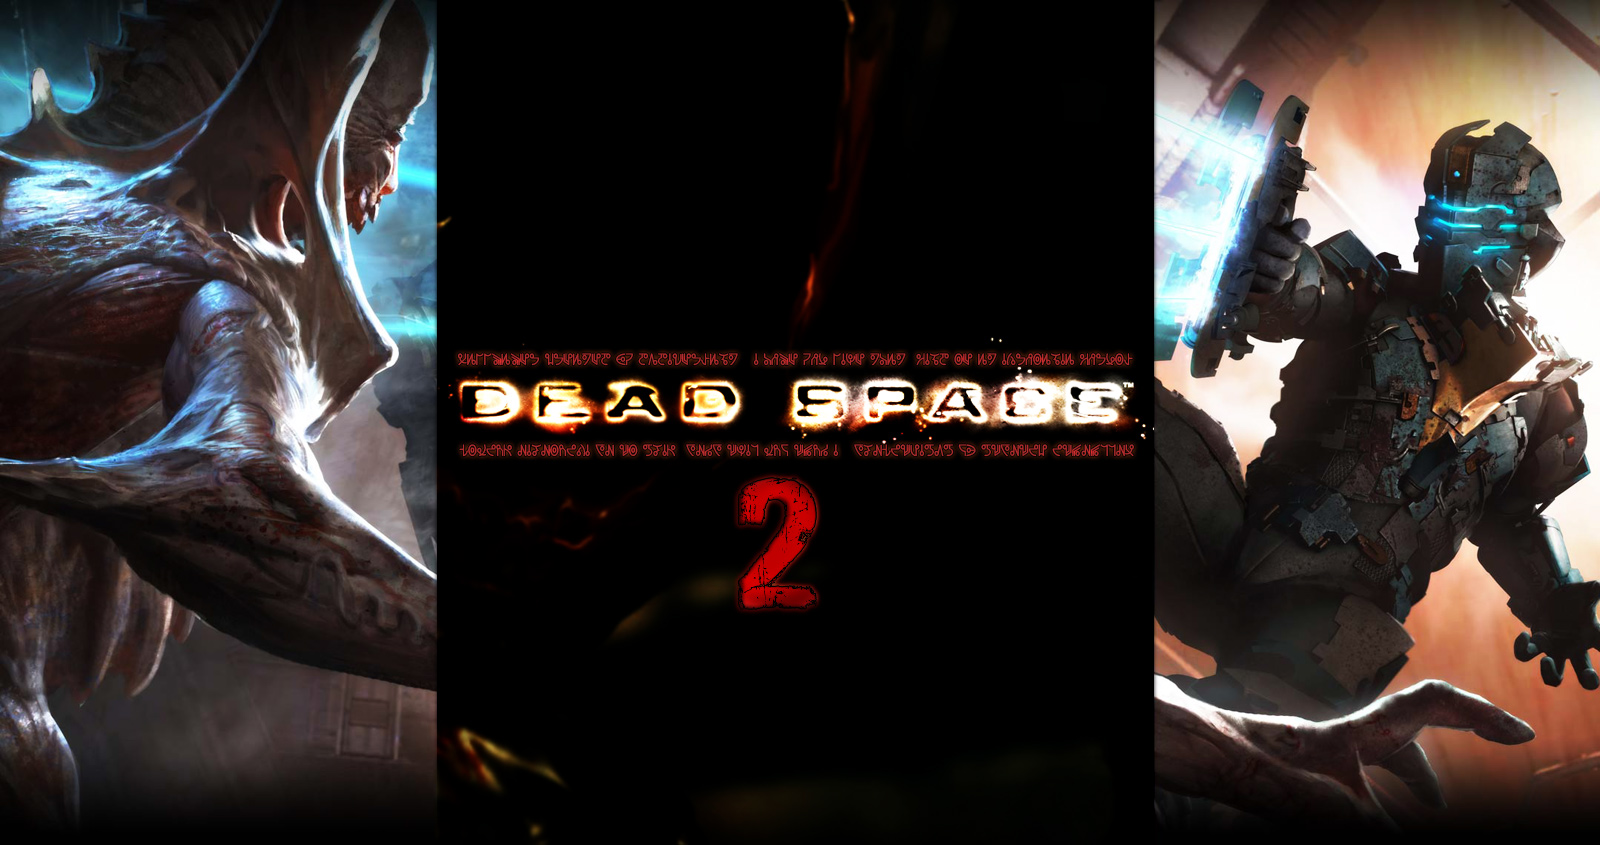 Dead Space 2 wallpaper